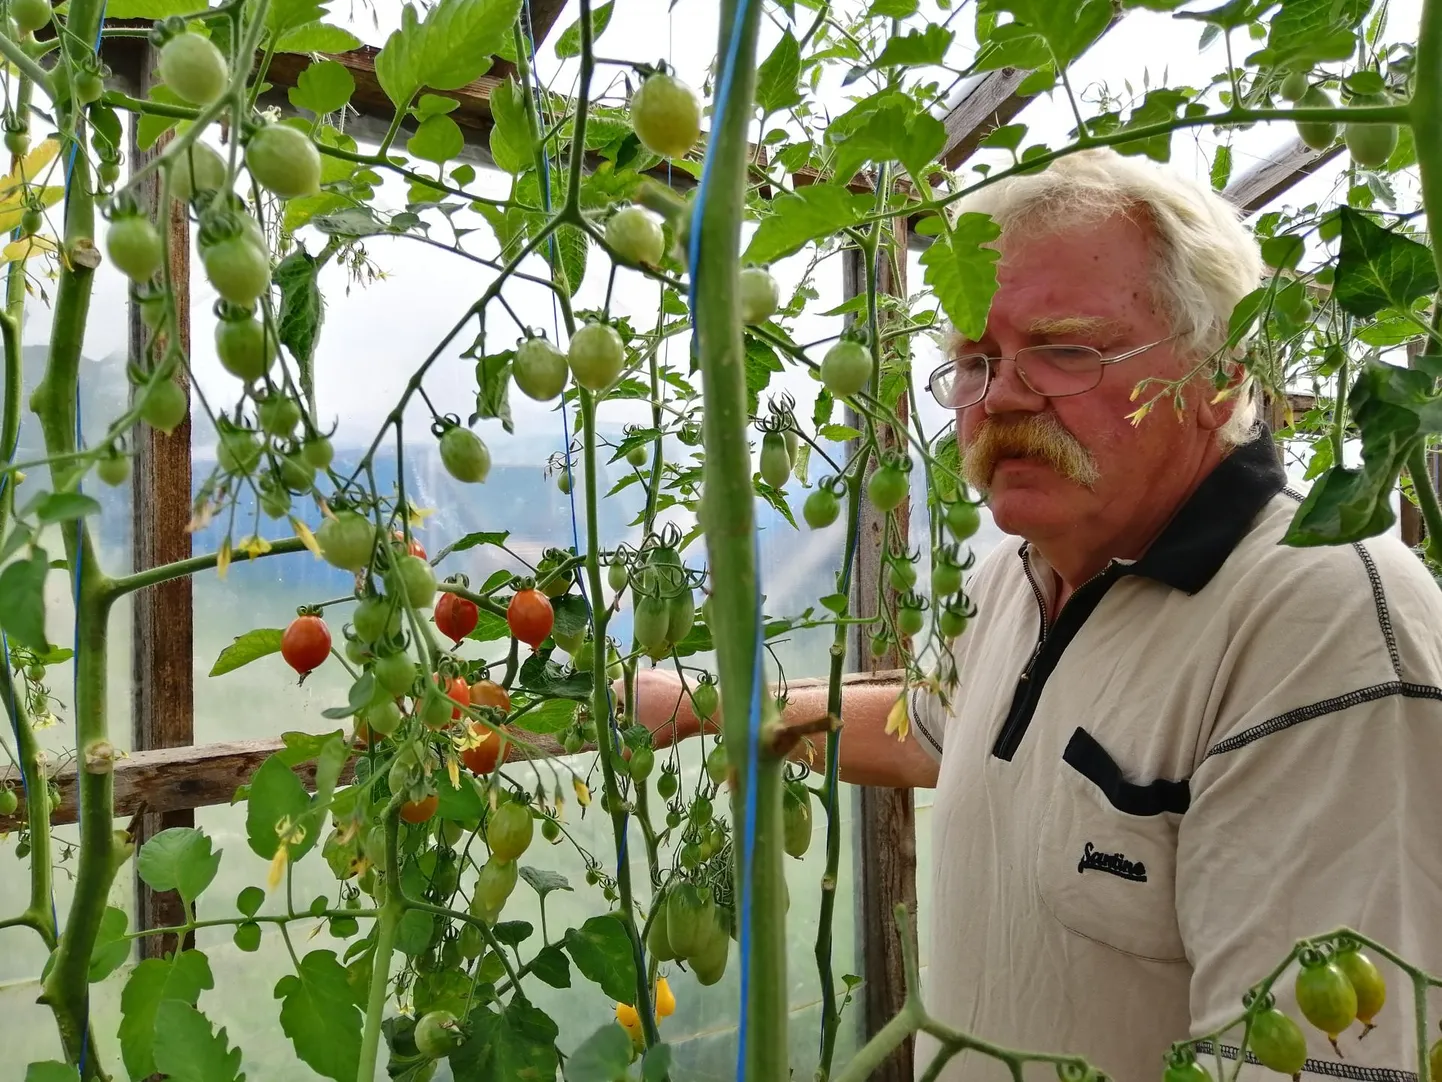 Kurke ja tomateid kasvatav Vello Peitong tõdes, et kurke tuleb külmade ööde tõttu visalt, aga tomatisaaki saab parandada küll. „Kui juua ei anna, lähevad paremini punaseks,” teab üle 30 aasta taimi kasvatanud mees.